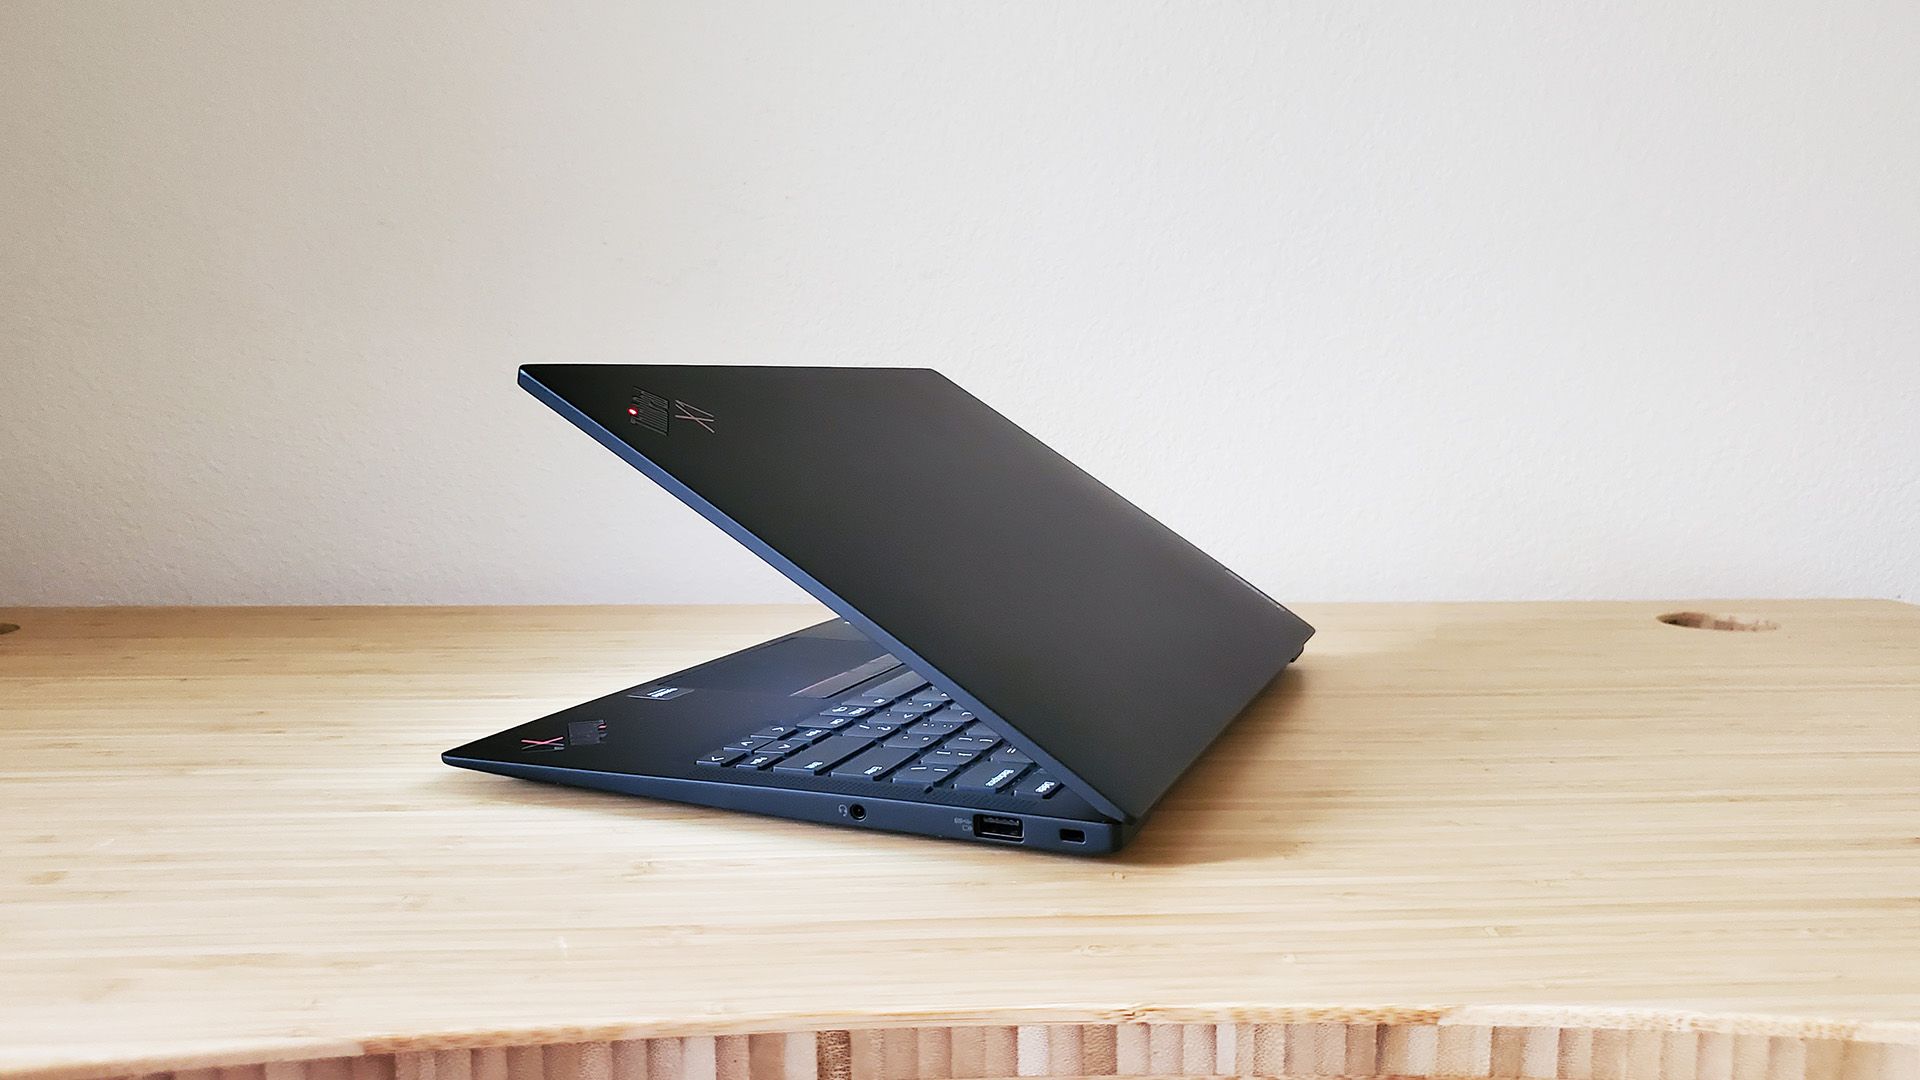 O laptop Lenovo ThinkPad X1 Carbon meio aberto sobre uma mesa.